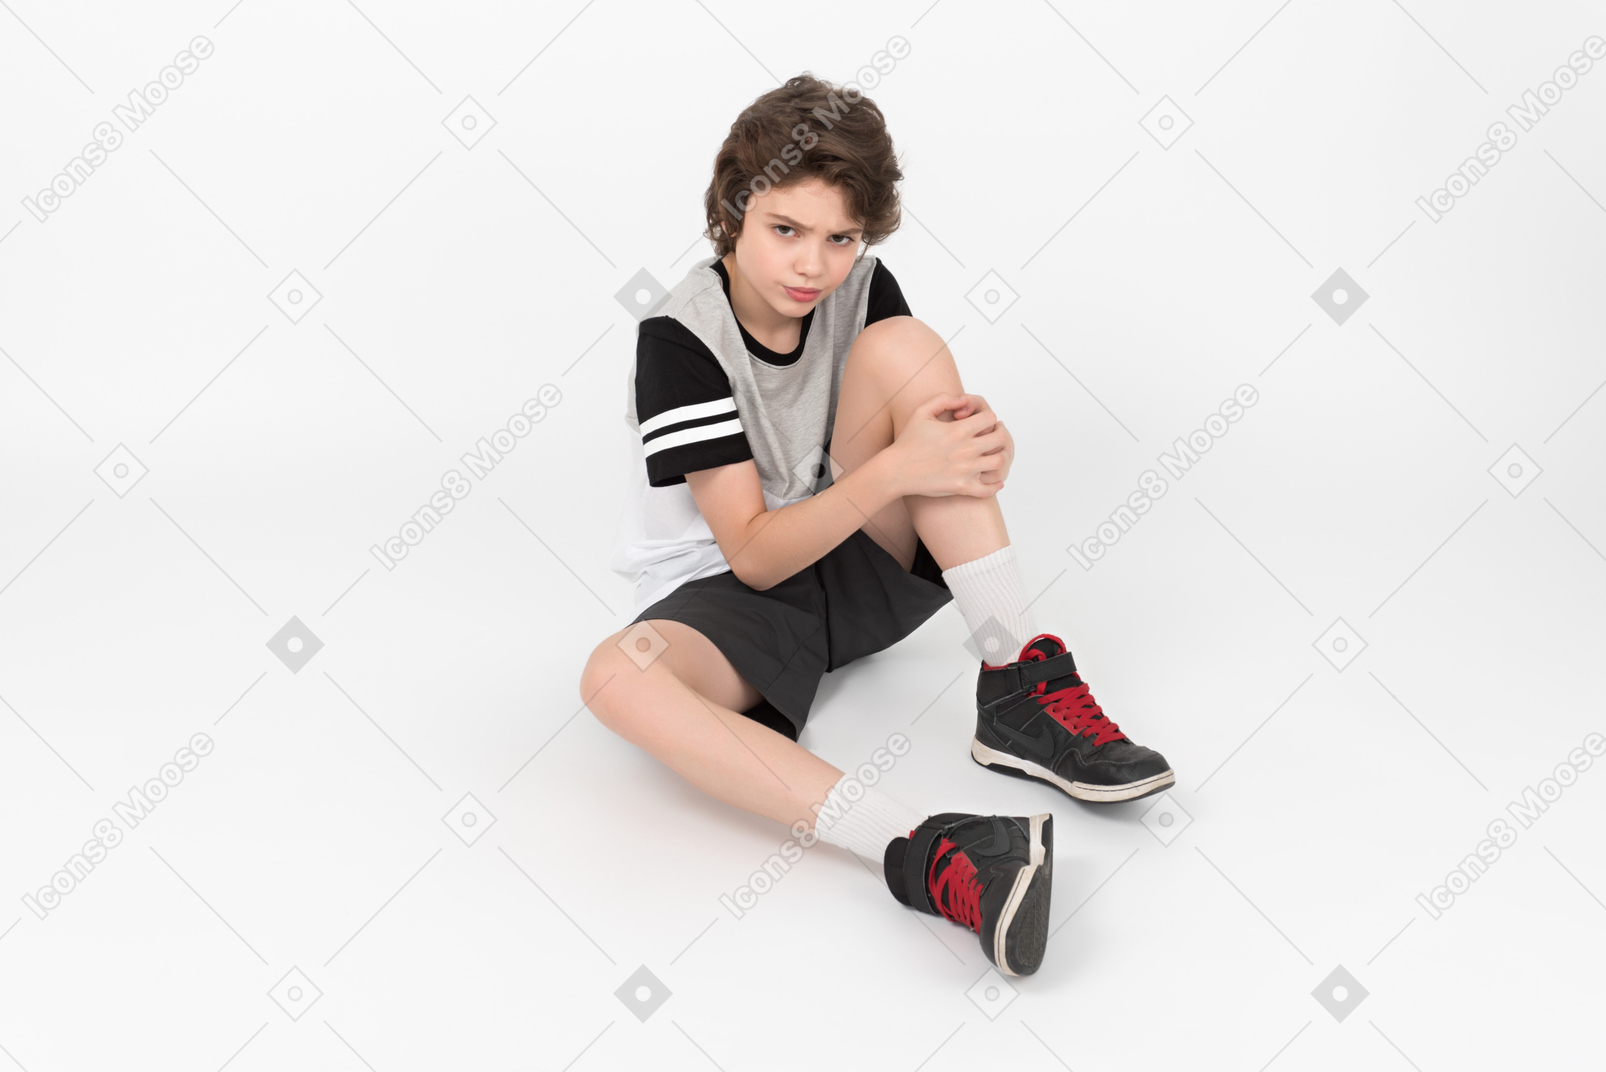 Сварливый спортивный мальчик сидит на полу и касается его ноги